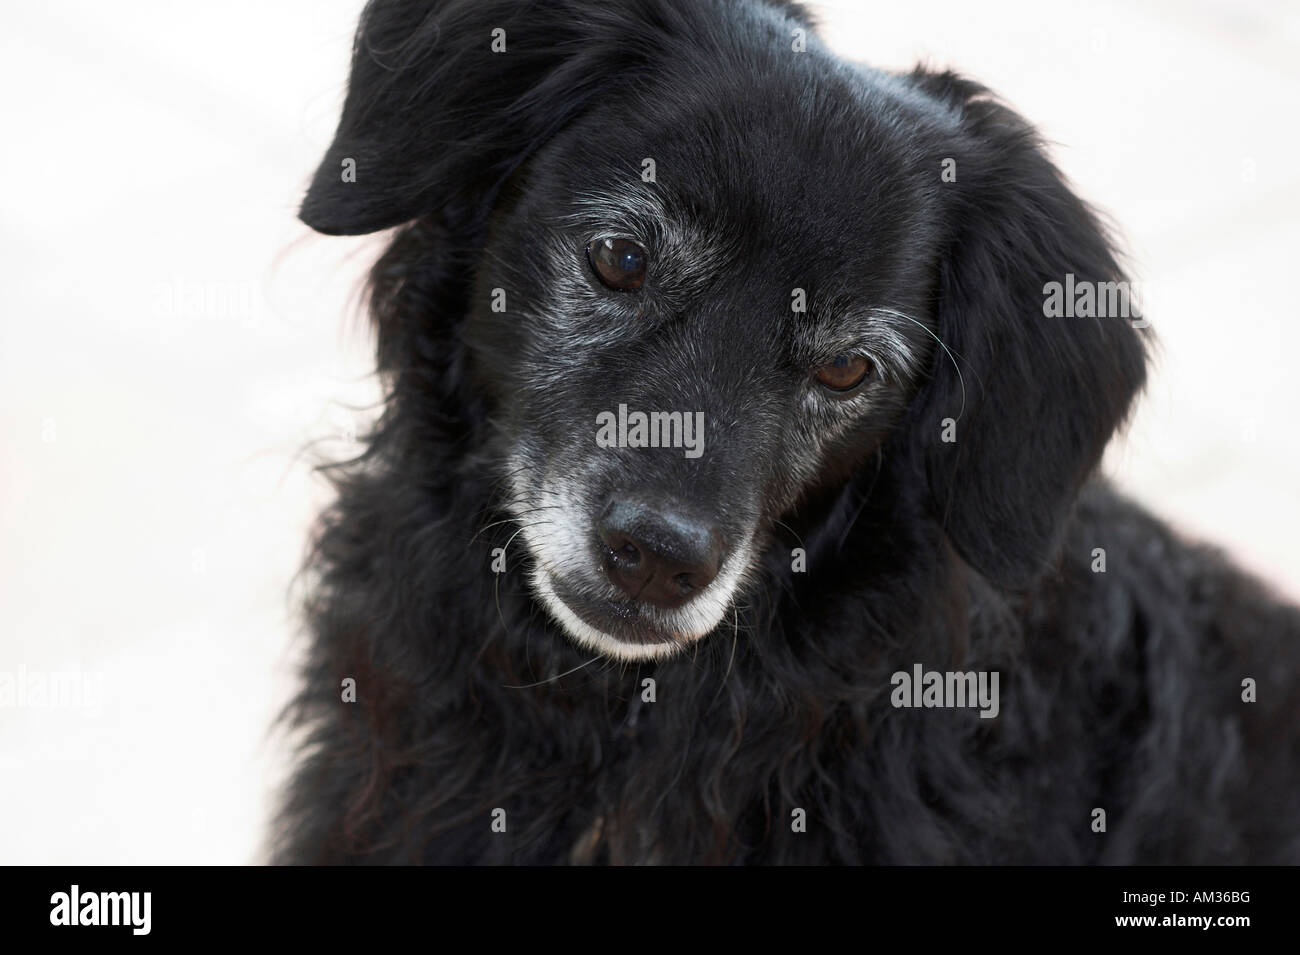 Petit chien noir a l'air malheureux, portrait, cut out Banque D'Images